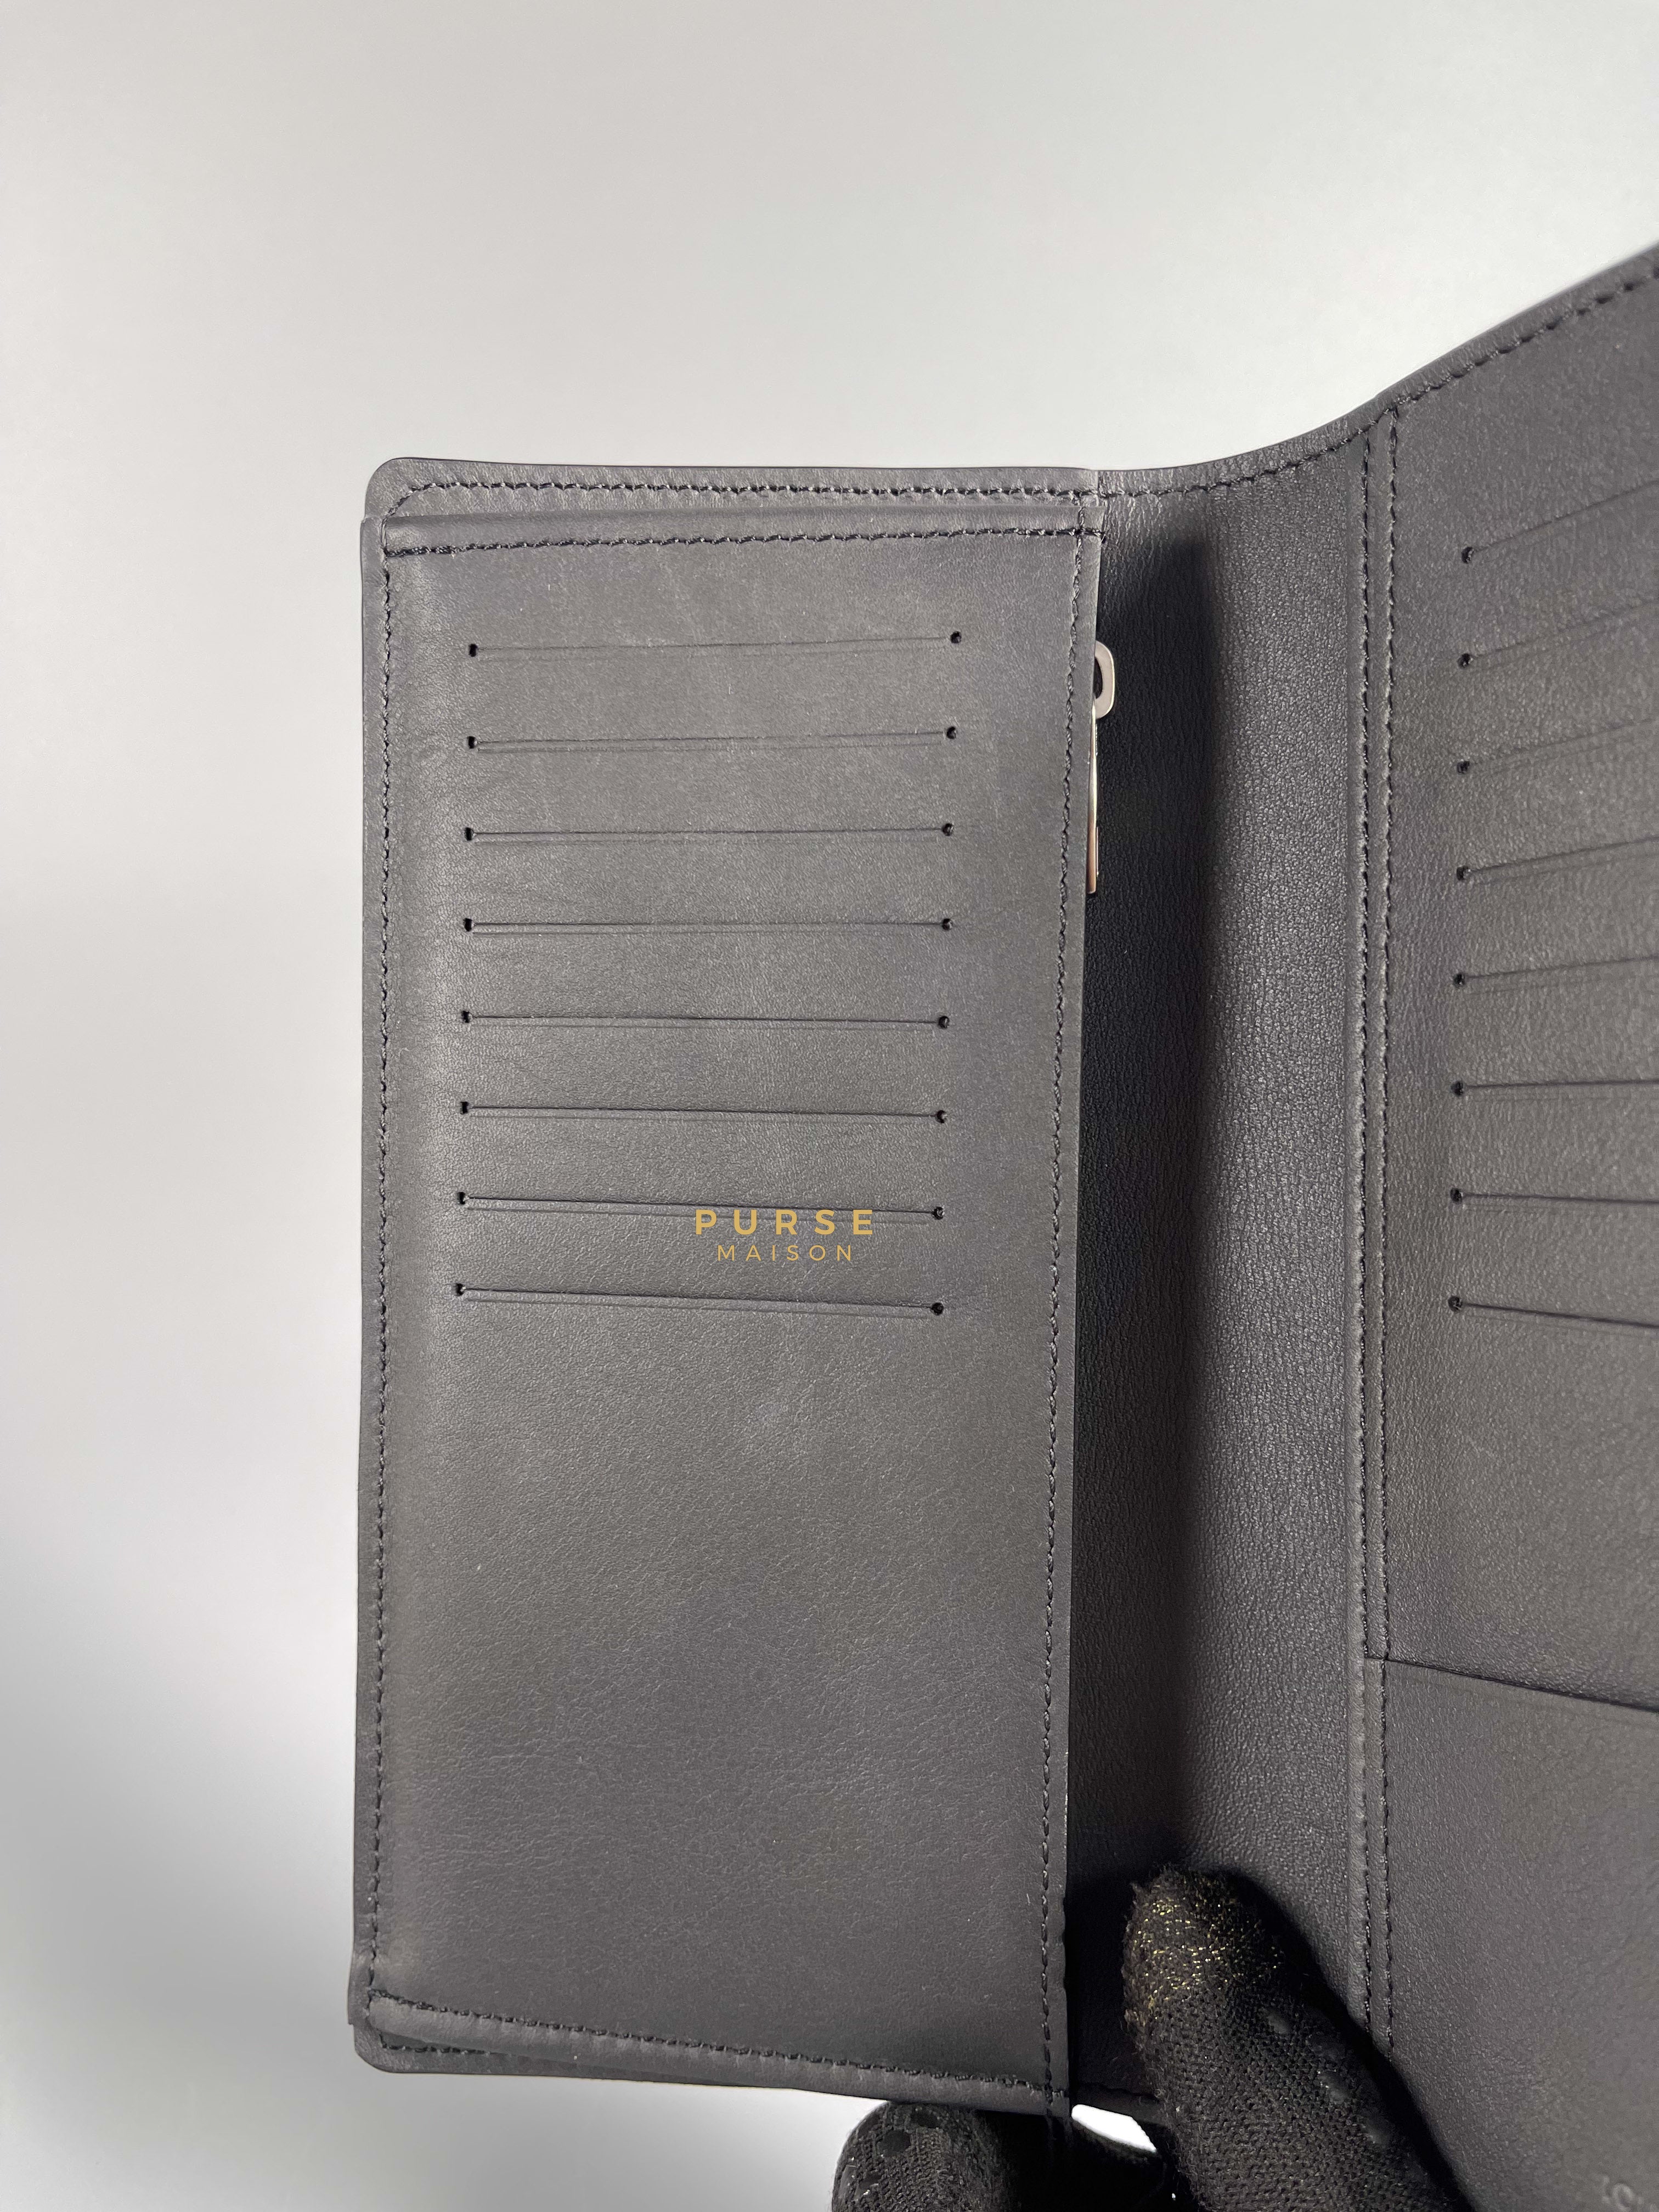 Louis Vuitton Brazza Black Damier Infini Leather Wallet (Microchip) | Purse Maison Luxury Bags Shop